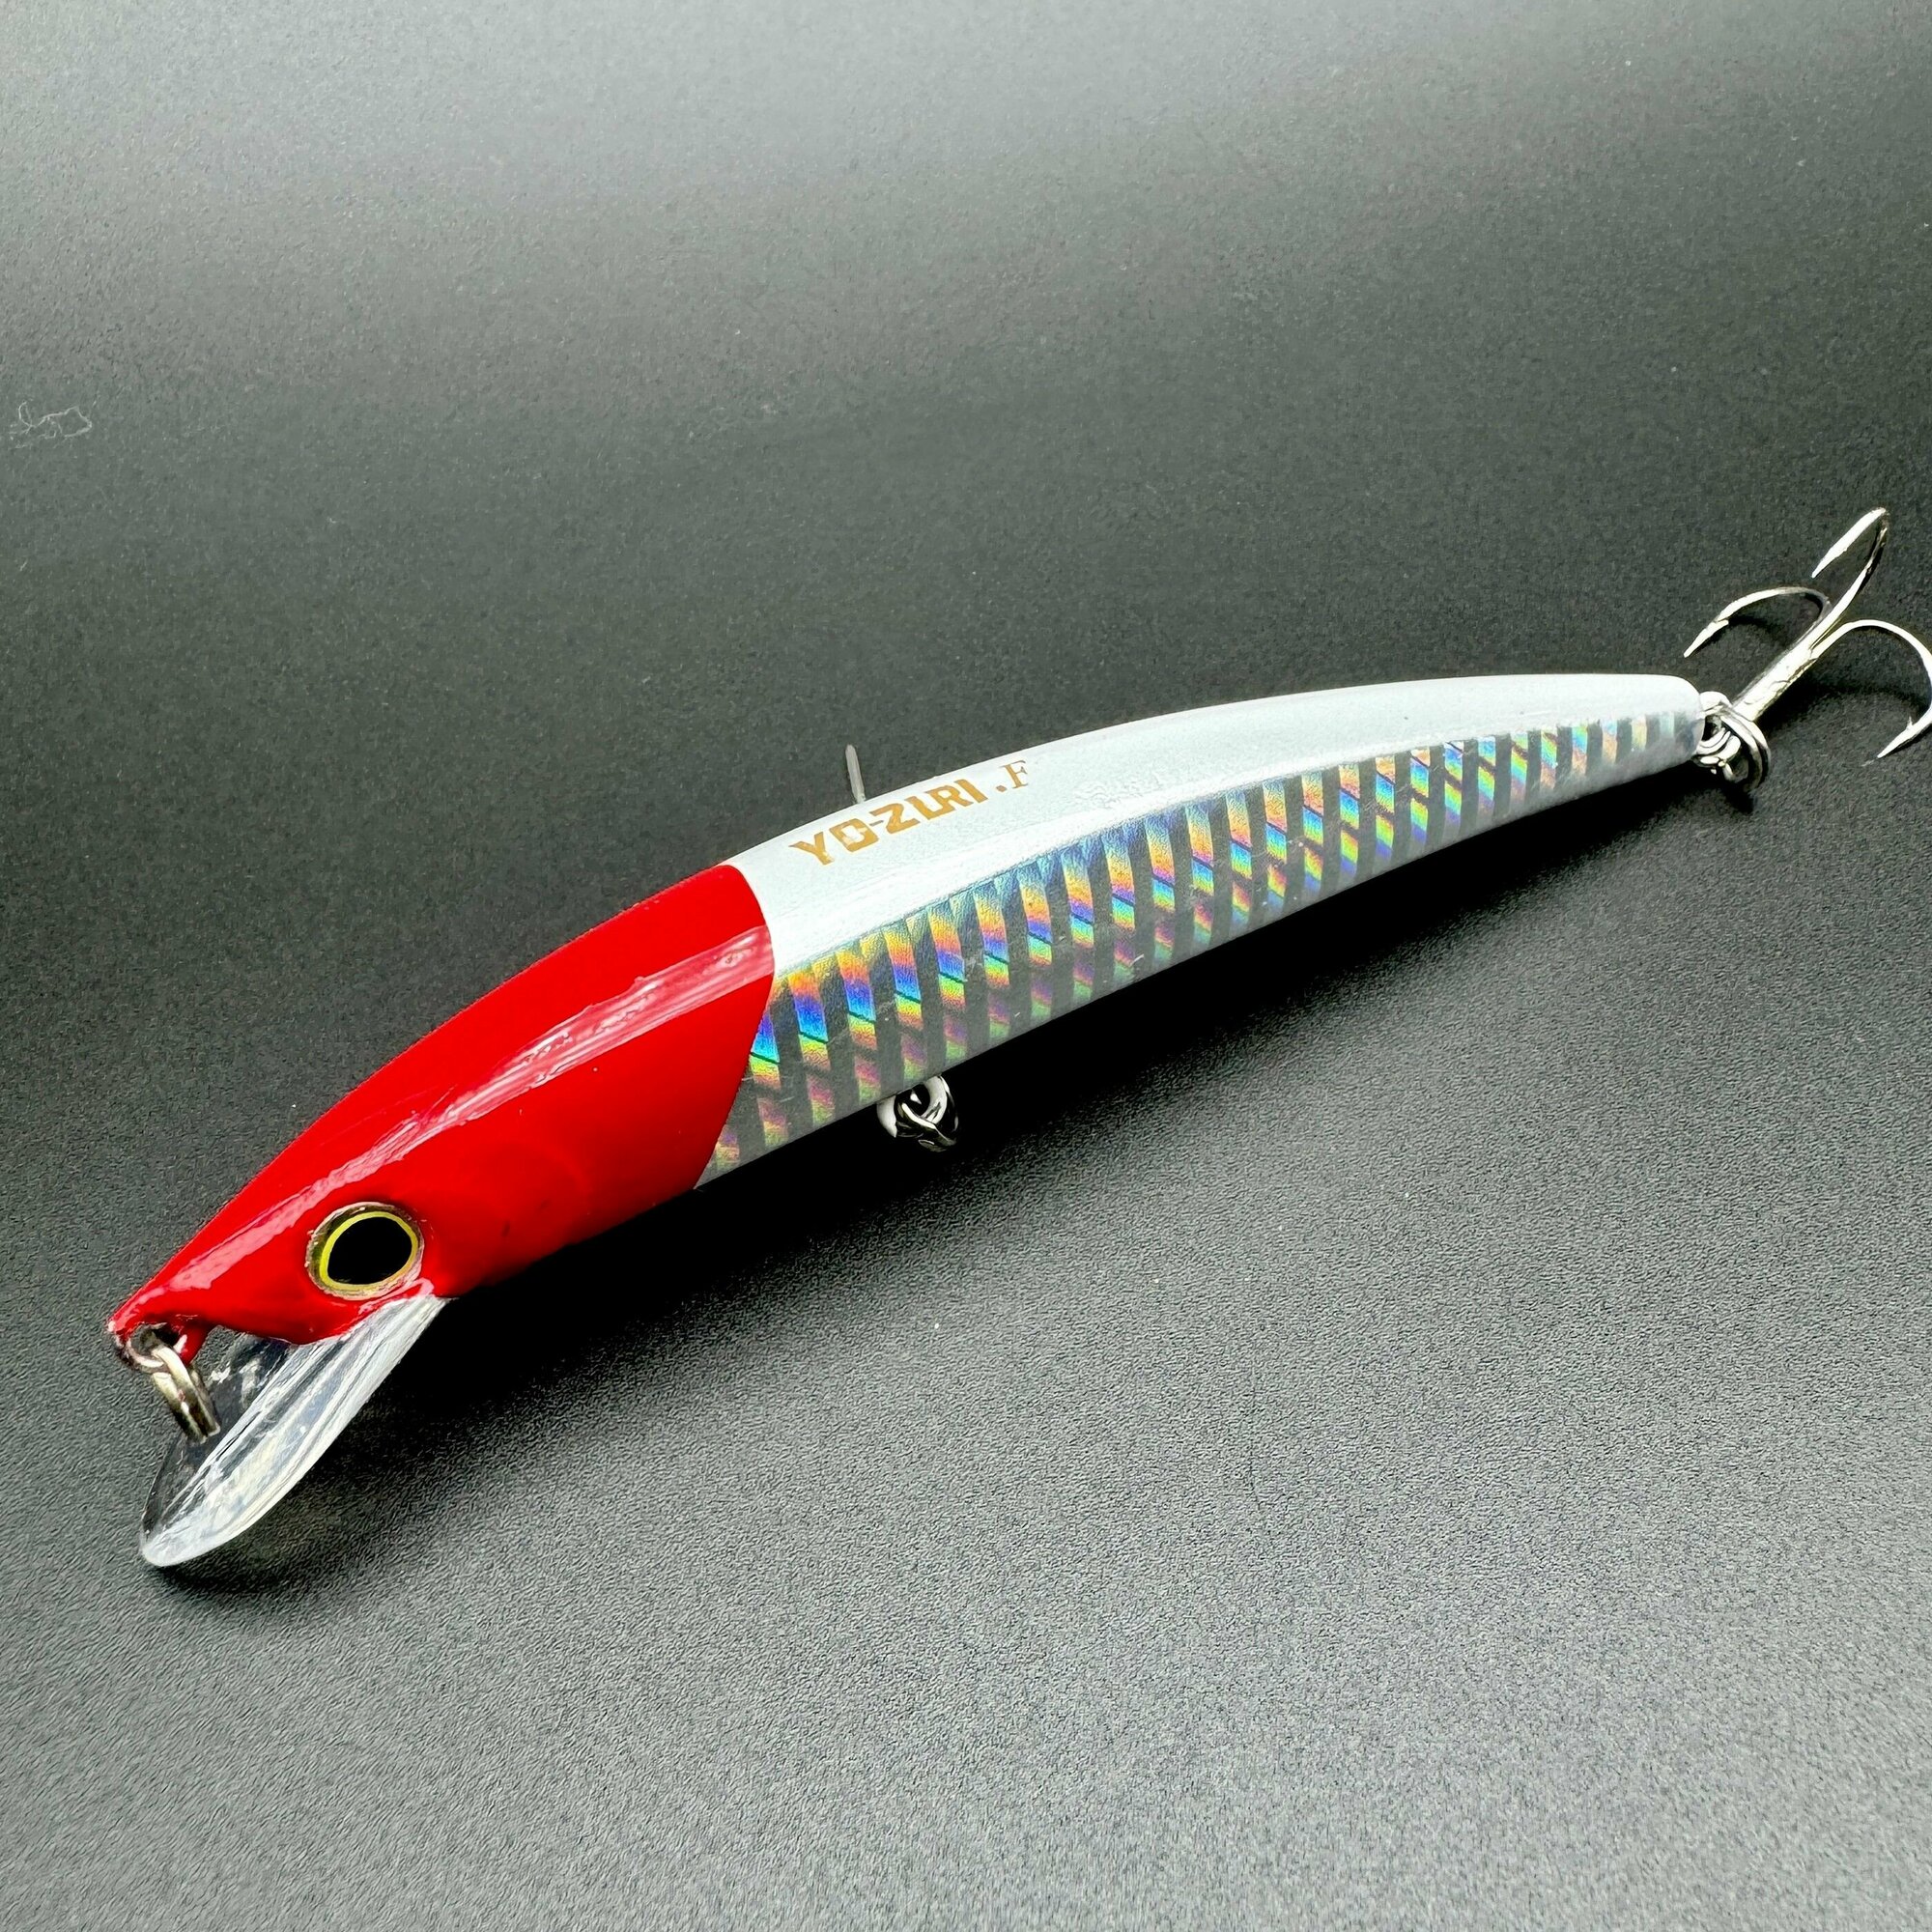 Воблер для рыбалки Yo-Zuri Crystal minnow 110mm F 11g на щуку, жерех, судак, окунь